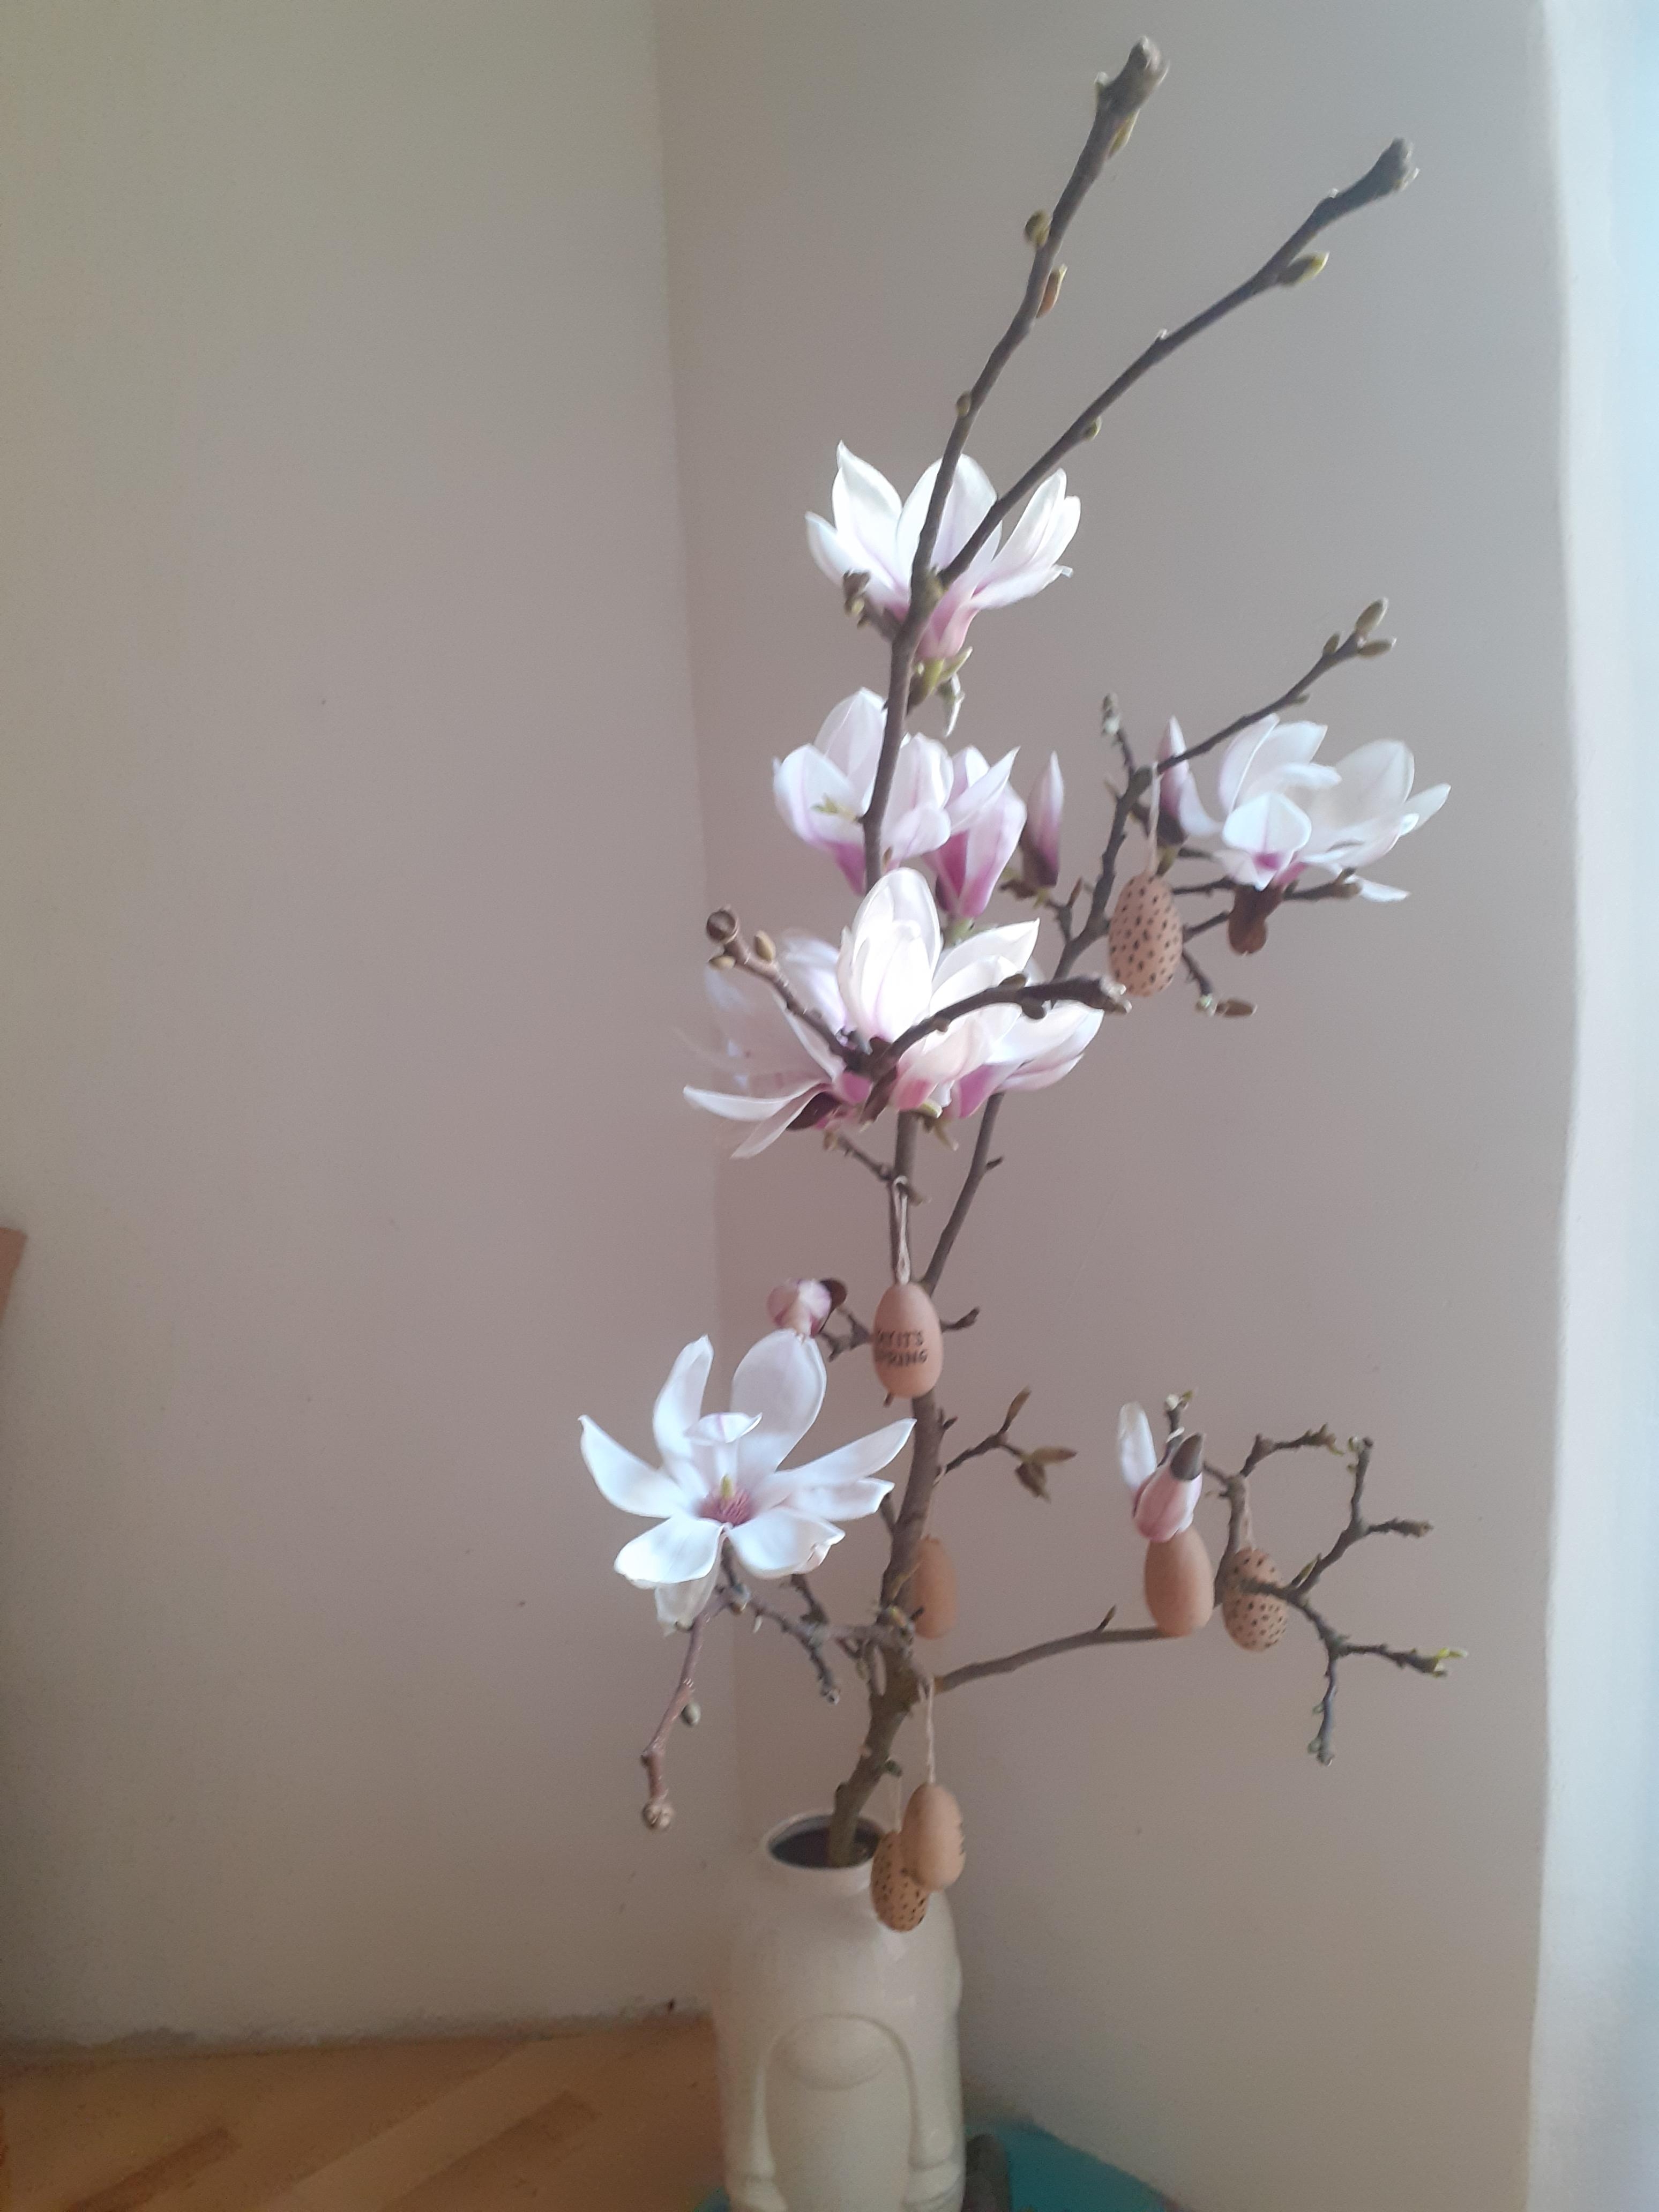 #freshflowerfriday
#magnolia, duftet herrlich 
#livingchallenge